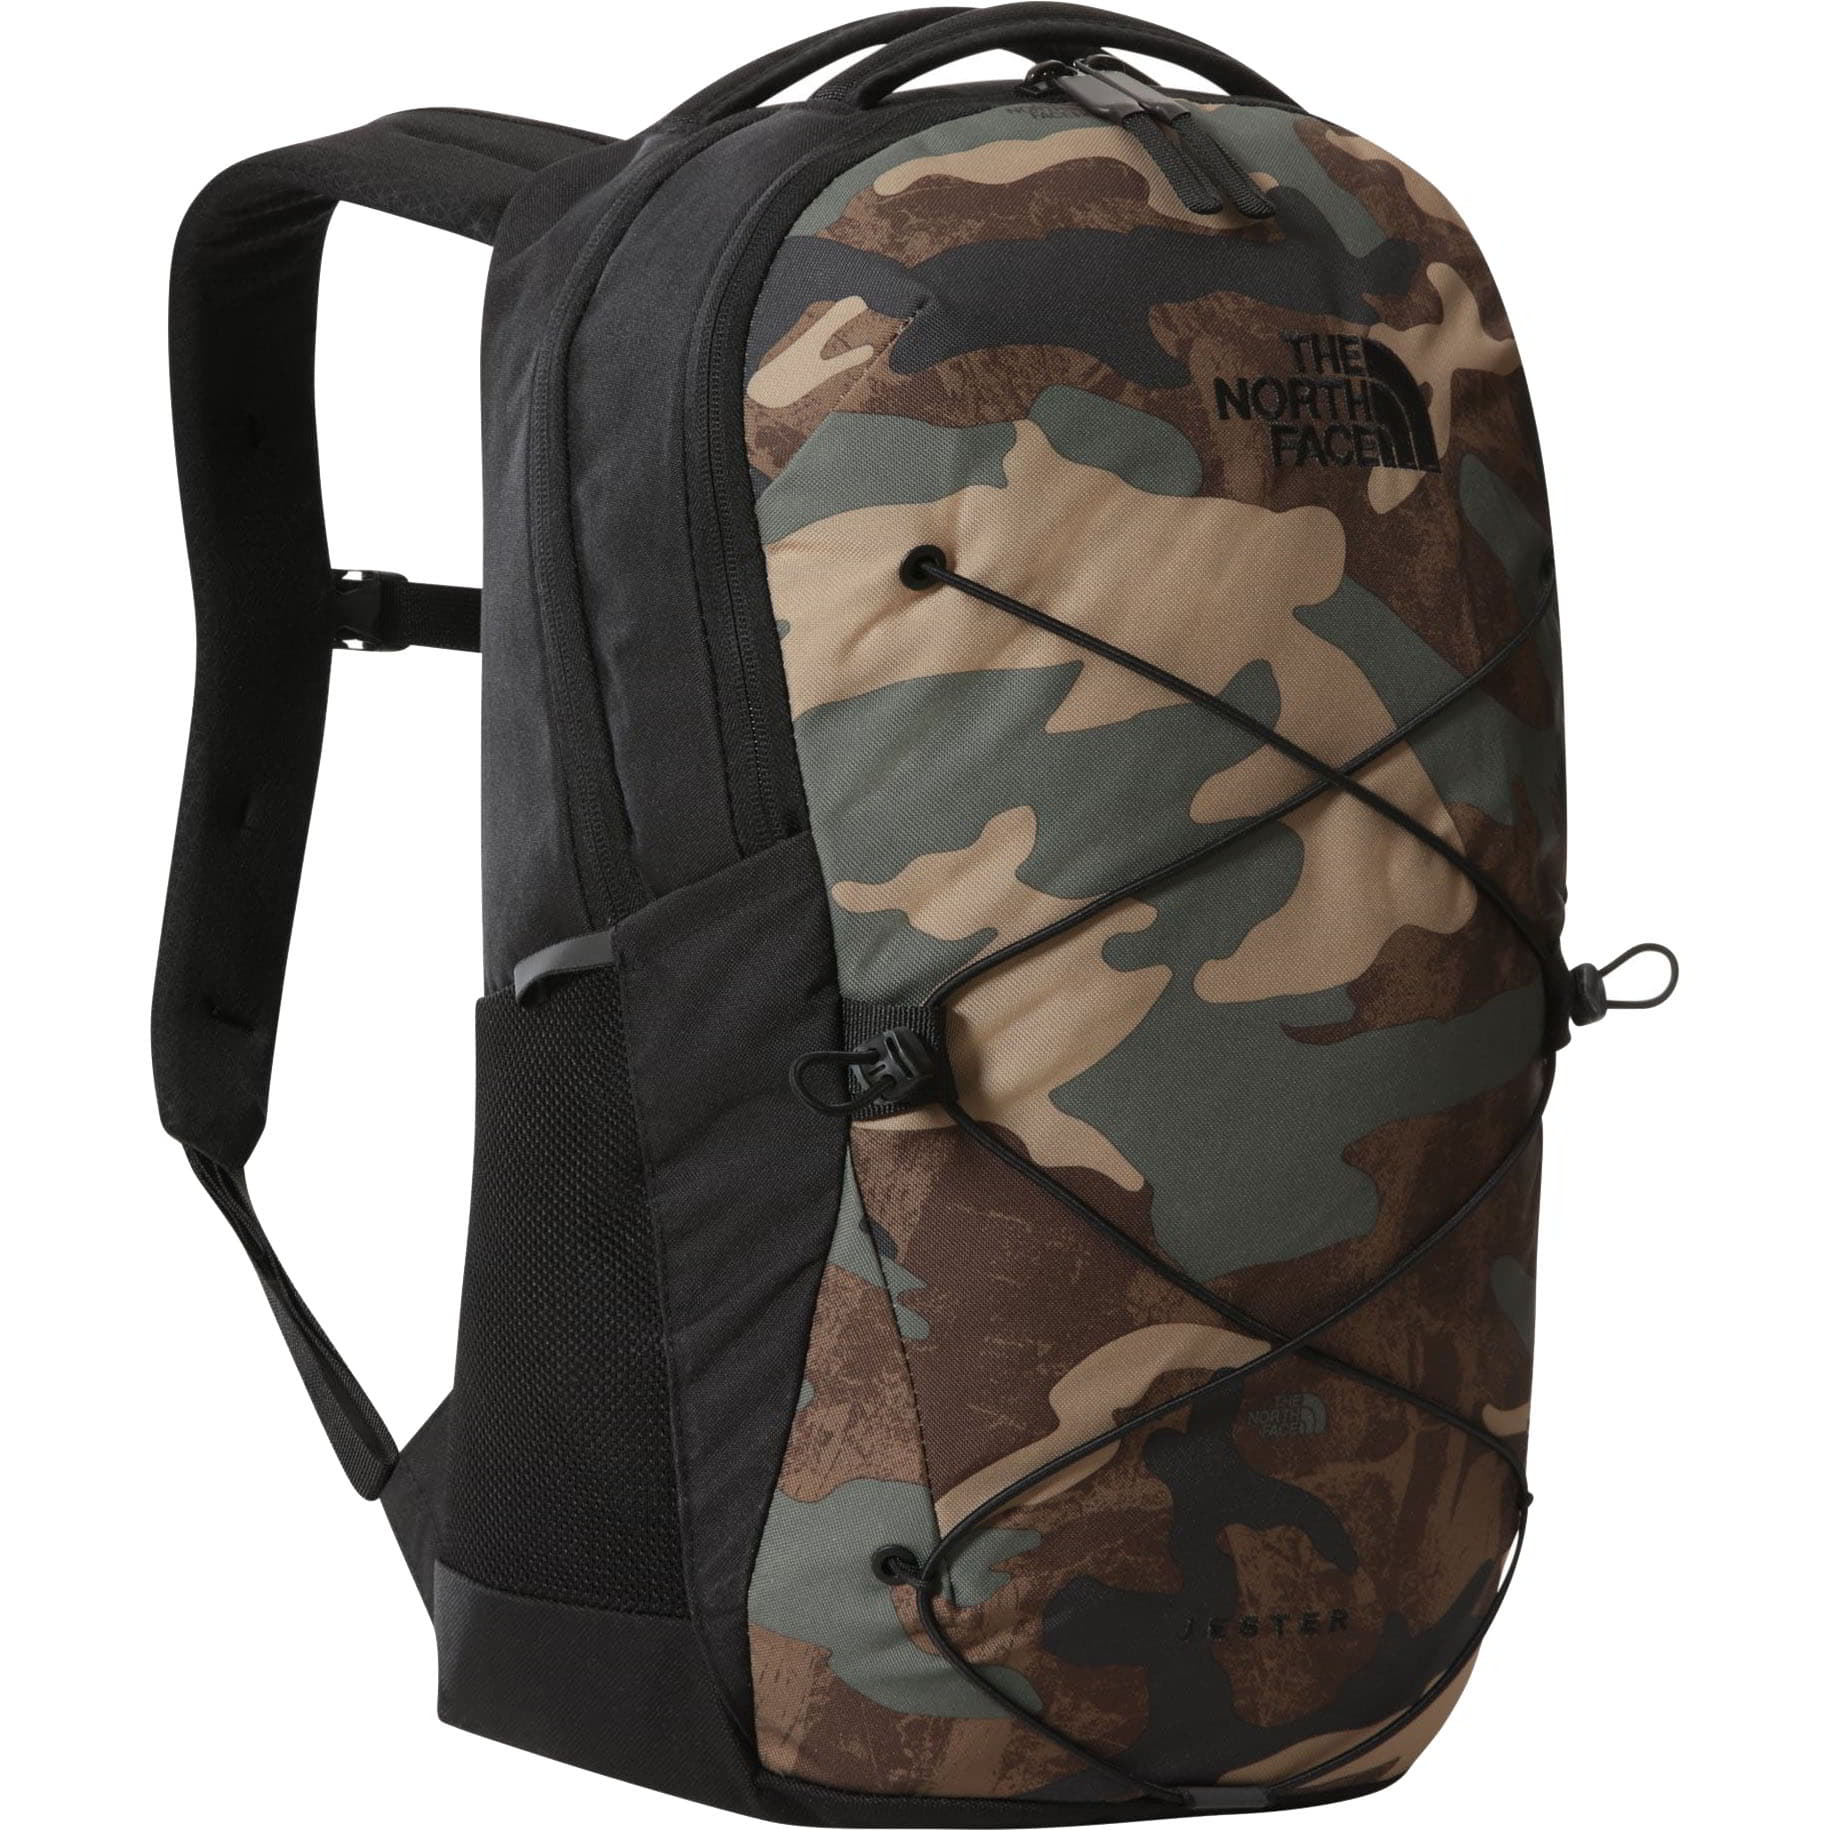 North Face Jester Backpack Rucksack Laptop Bag - One Size (27.5L)